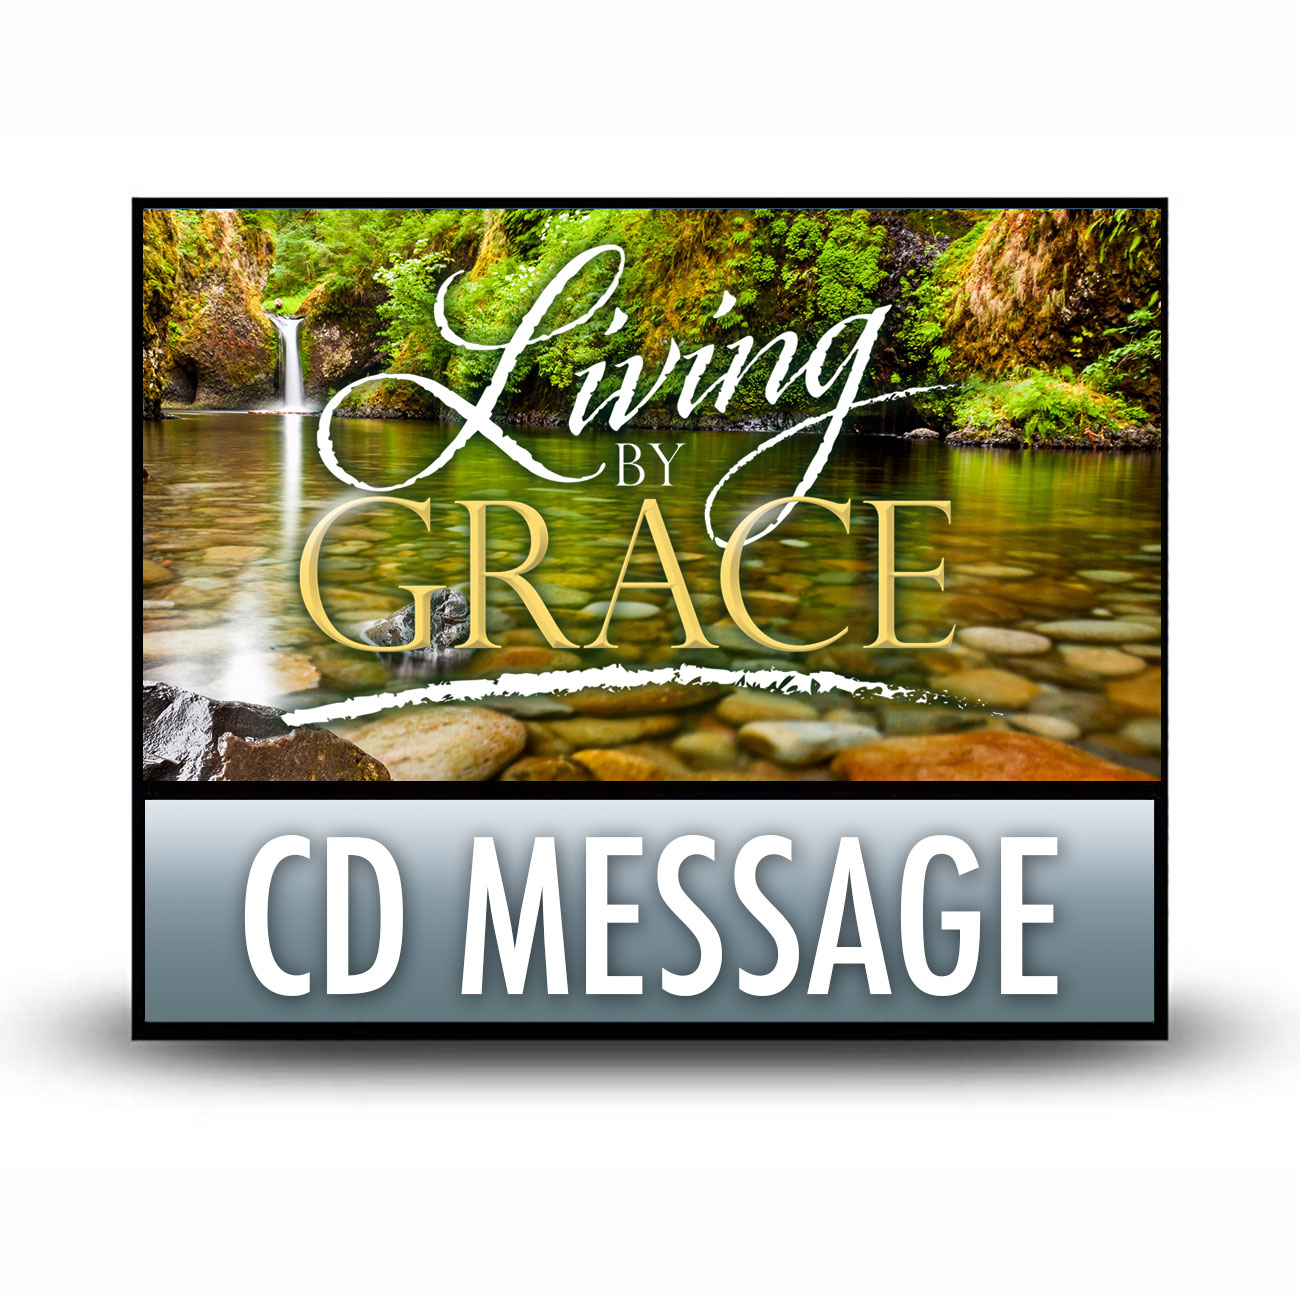 LBG07 CD message